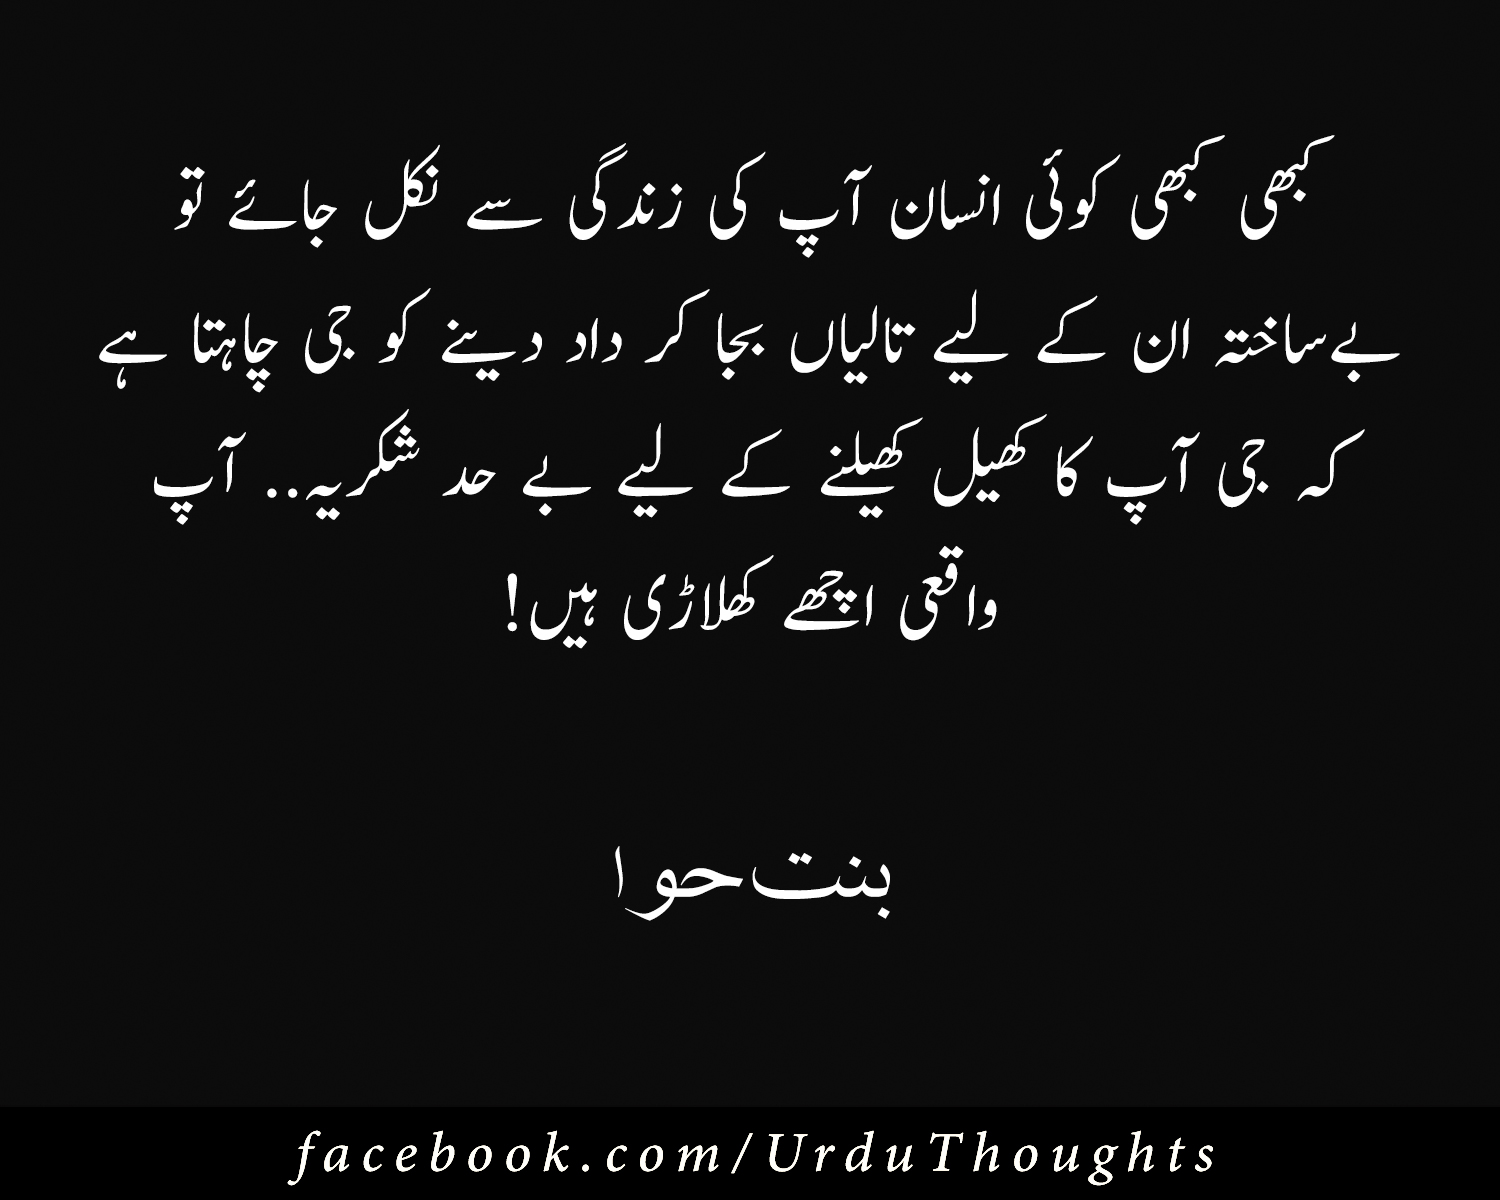 Urdu funny quotes jokes poetry school memes very choose board cute